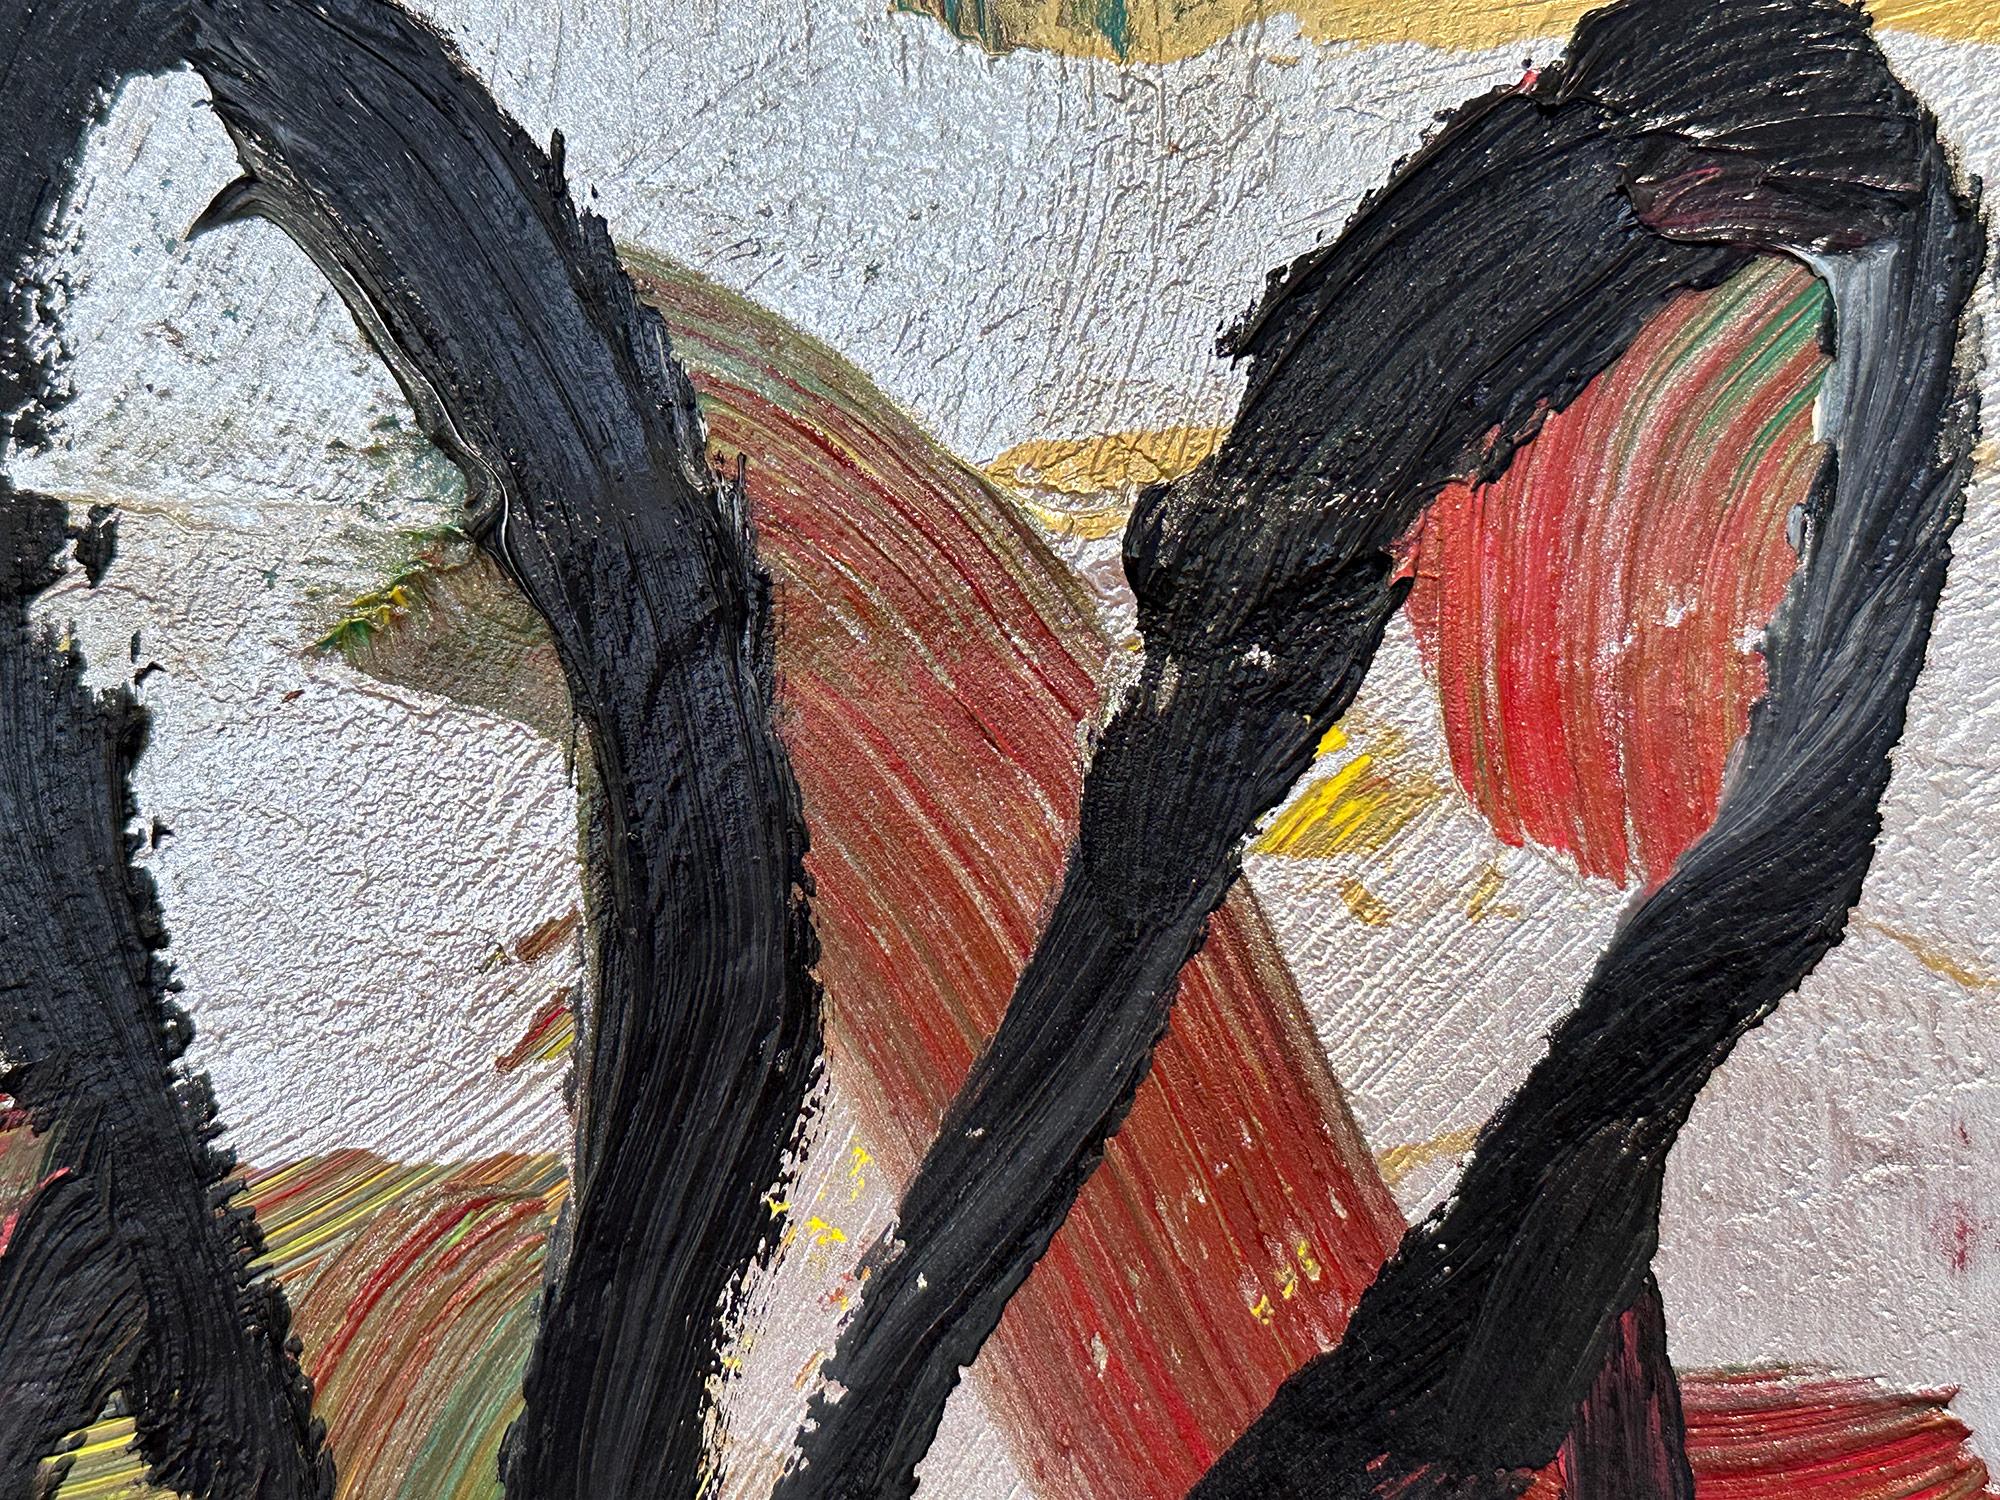 Eine wunderbare Komposition eines der ikonischsten Themen von Slonem, nämlich Hasen. Dieses Werk zeigt die gestische Figur eines schwarzen Hasen auf einem mehrfarbigen, silbermetallischen Hintergrund mit dickem Farbauftrag. Inspiriert von der Natur